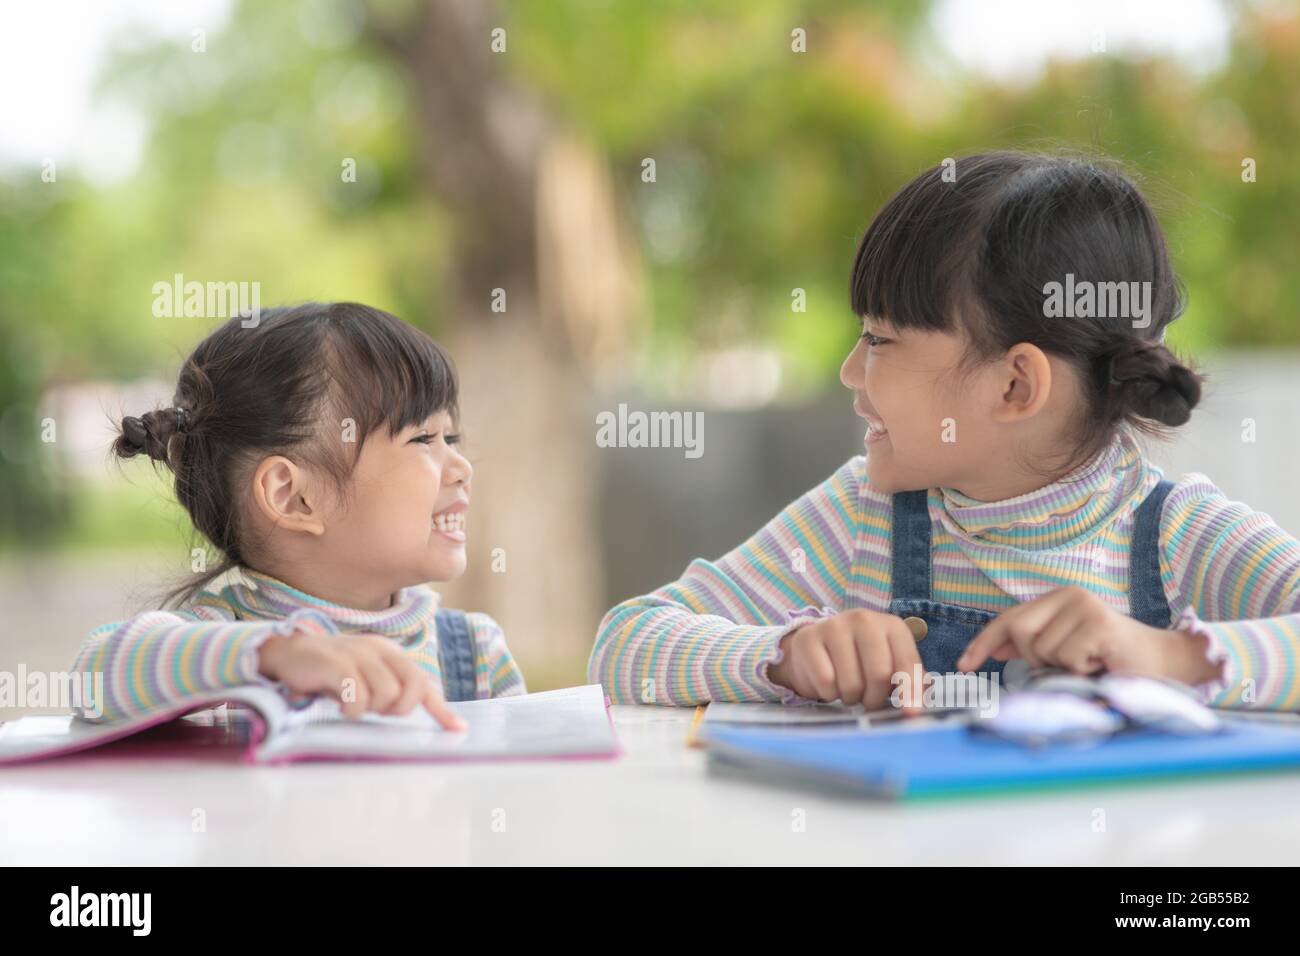 Deux jeunes filles asiatiques qui lisent le livre sur la table Banque D'Images